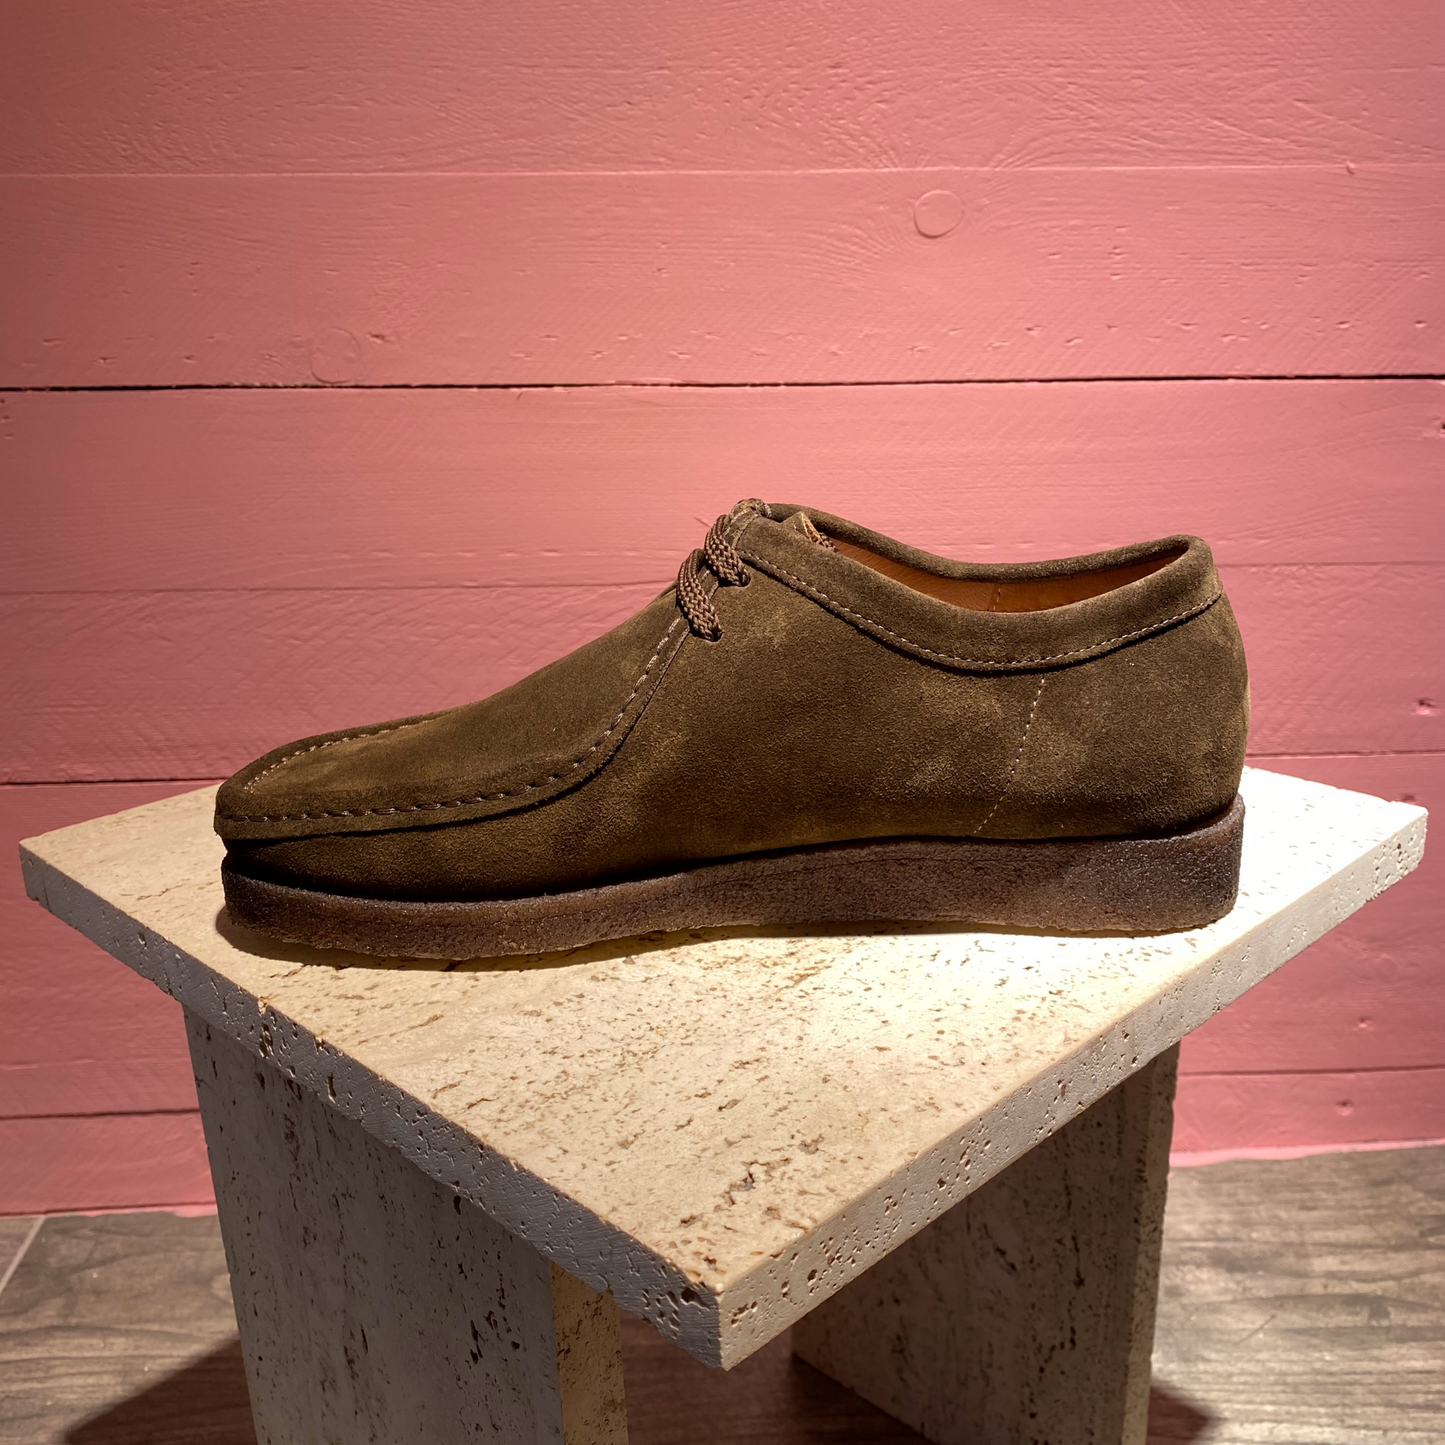 Chaussures Iconic en suède marron cousue à la main, semelle en crêpe. Ces chaussures au design iconique épuré sont les produits phares de Padmore & Barnes depuis 1960s.